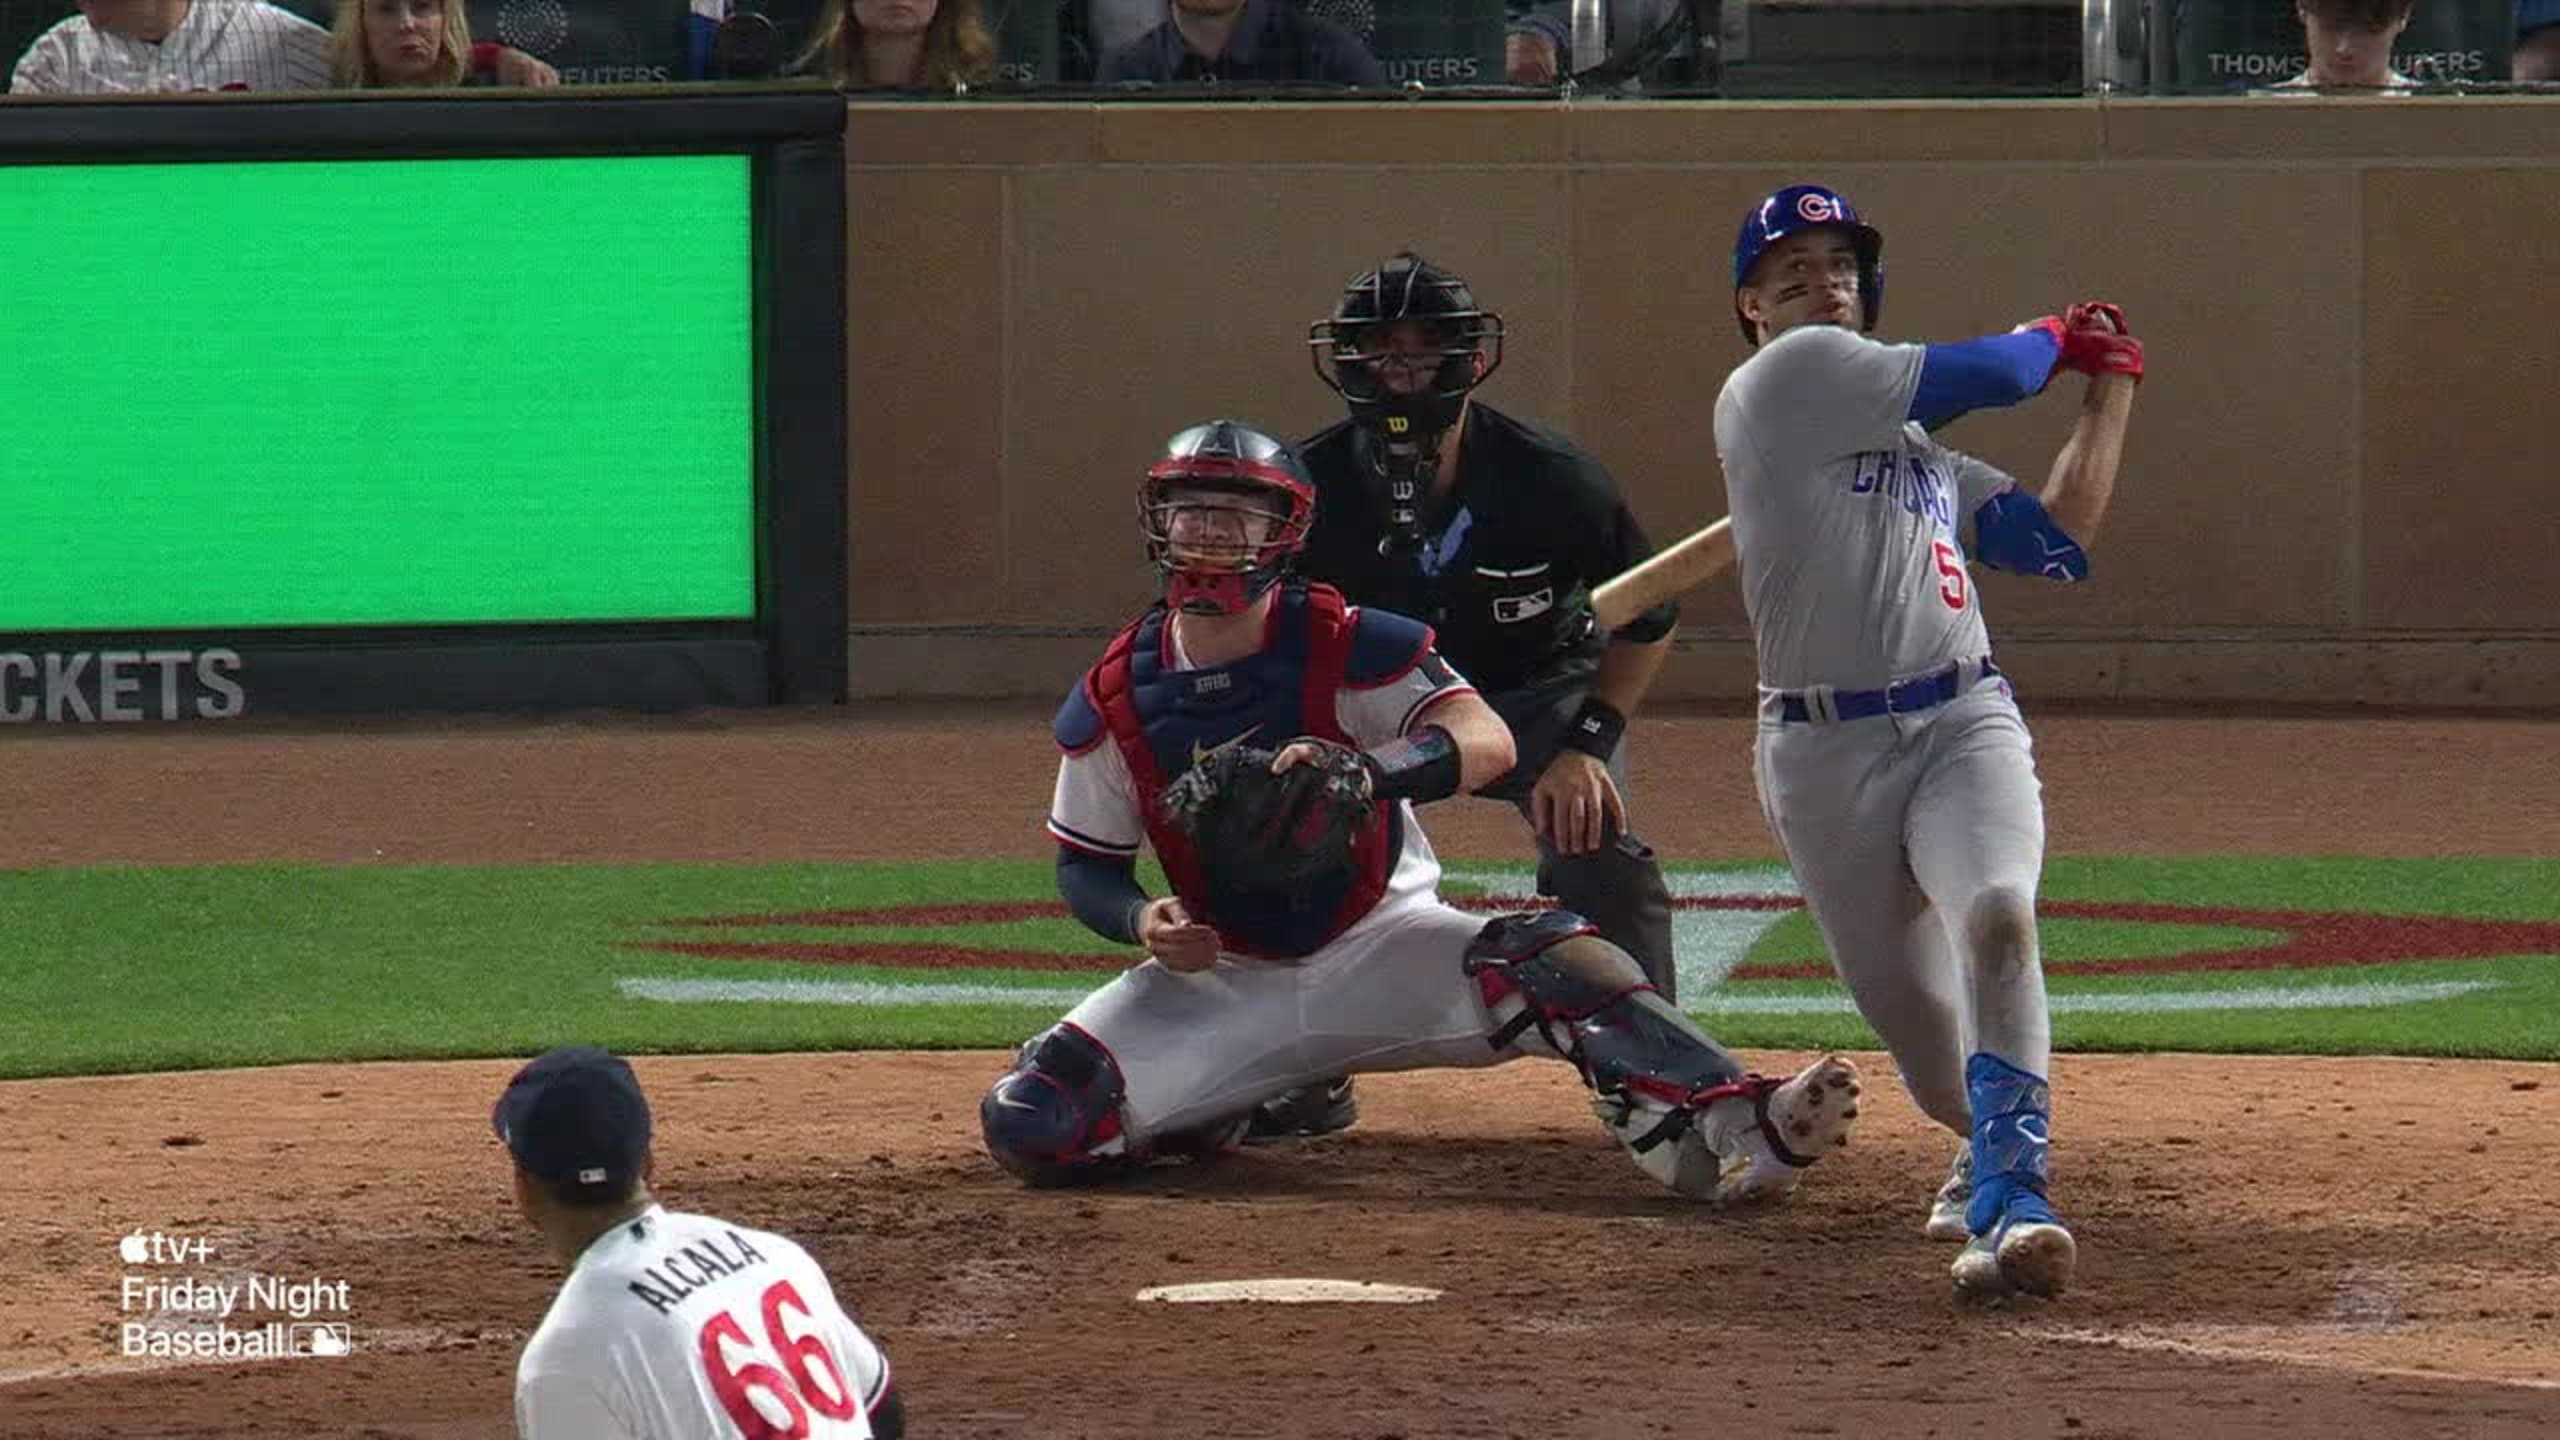 Chicago Cubs on X: 6 2/3 shutout frames from Drew Smyly! 🔥 https